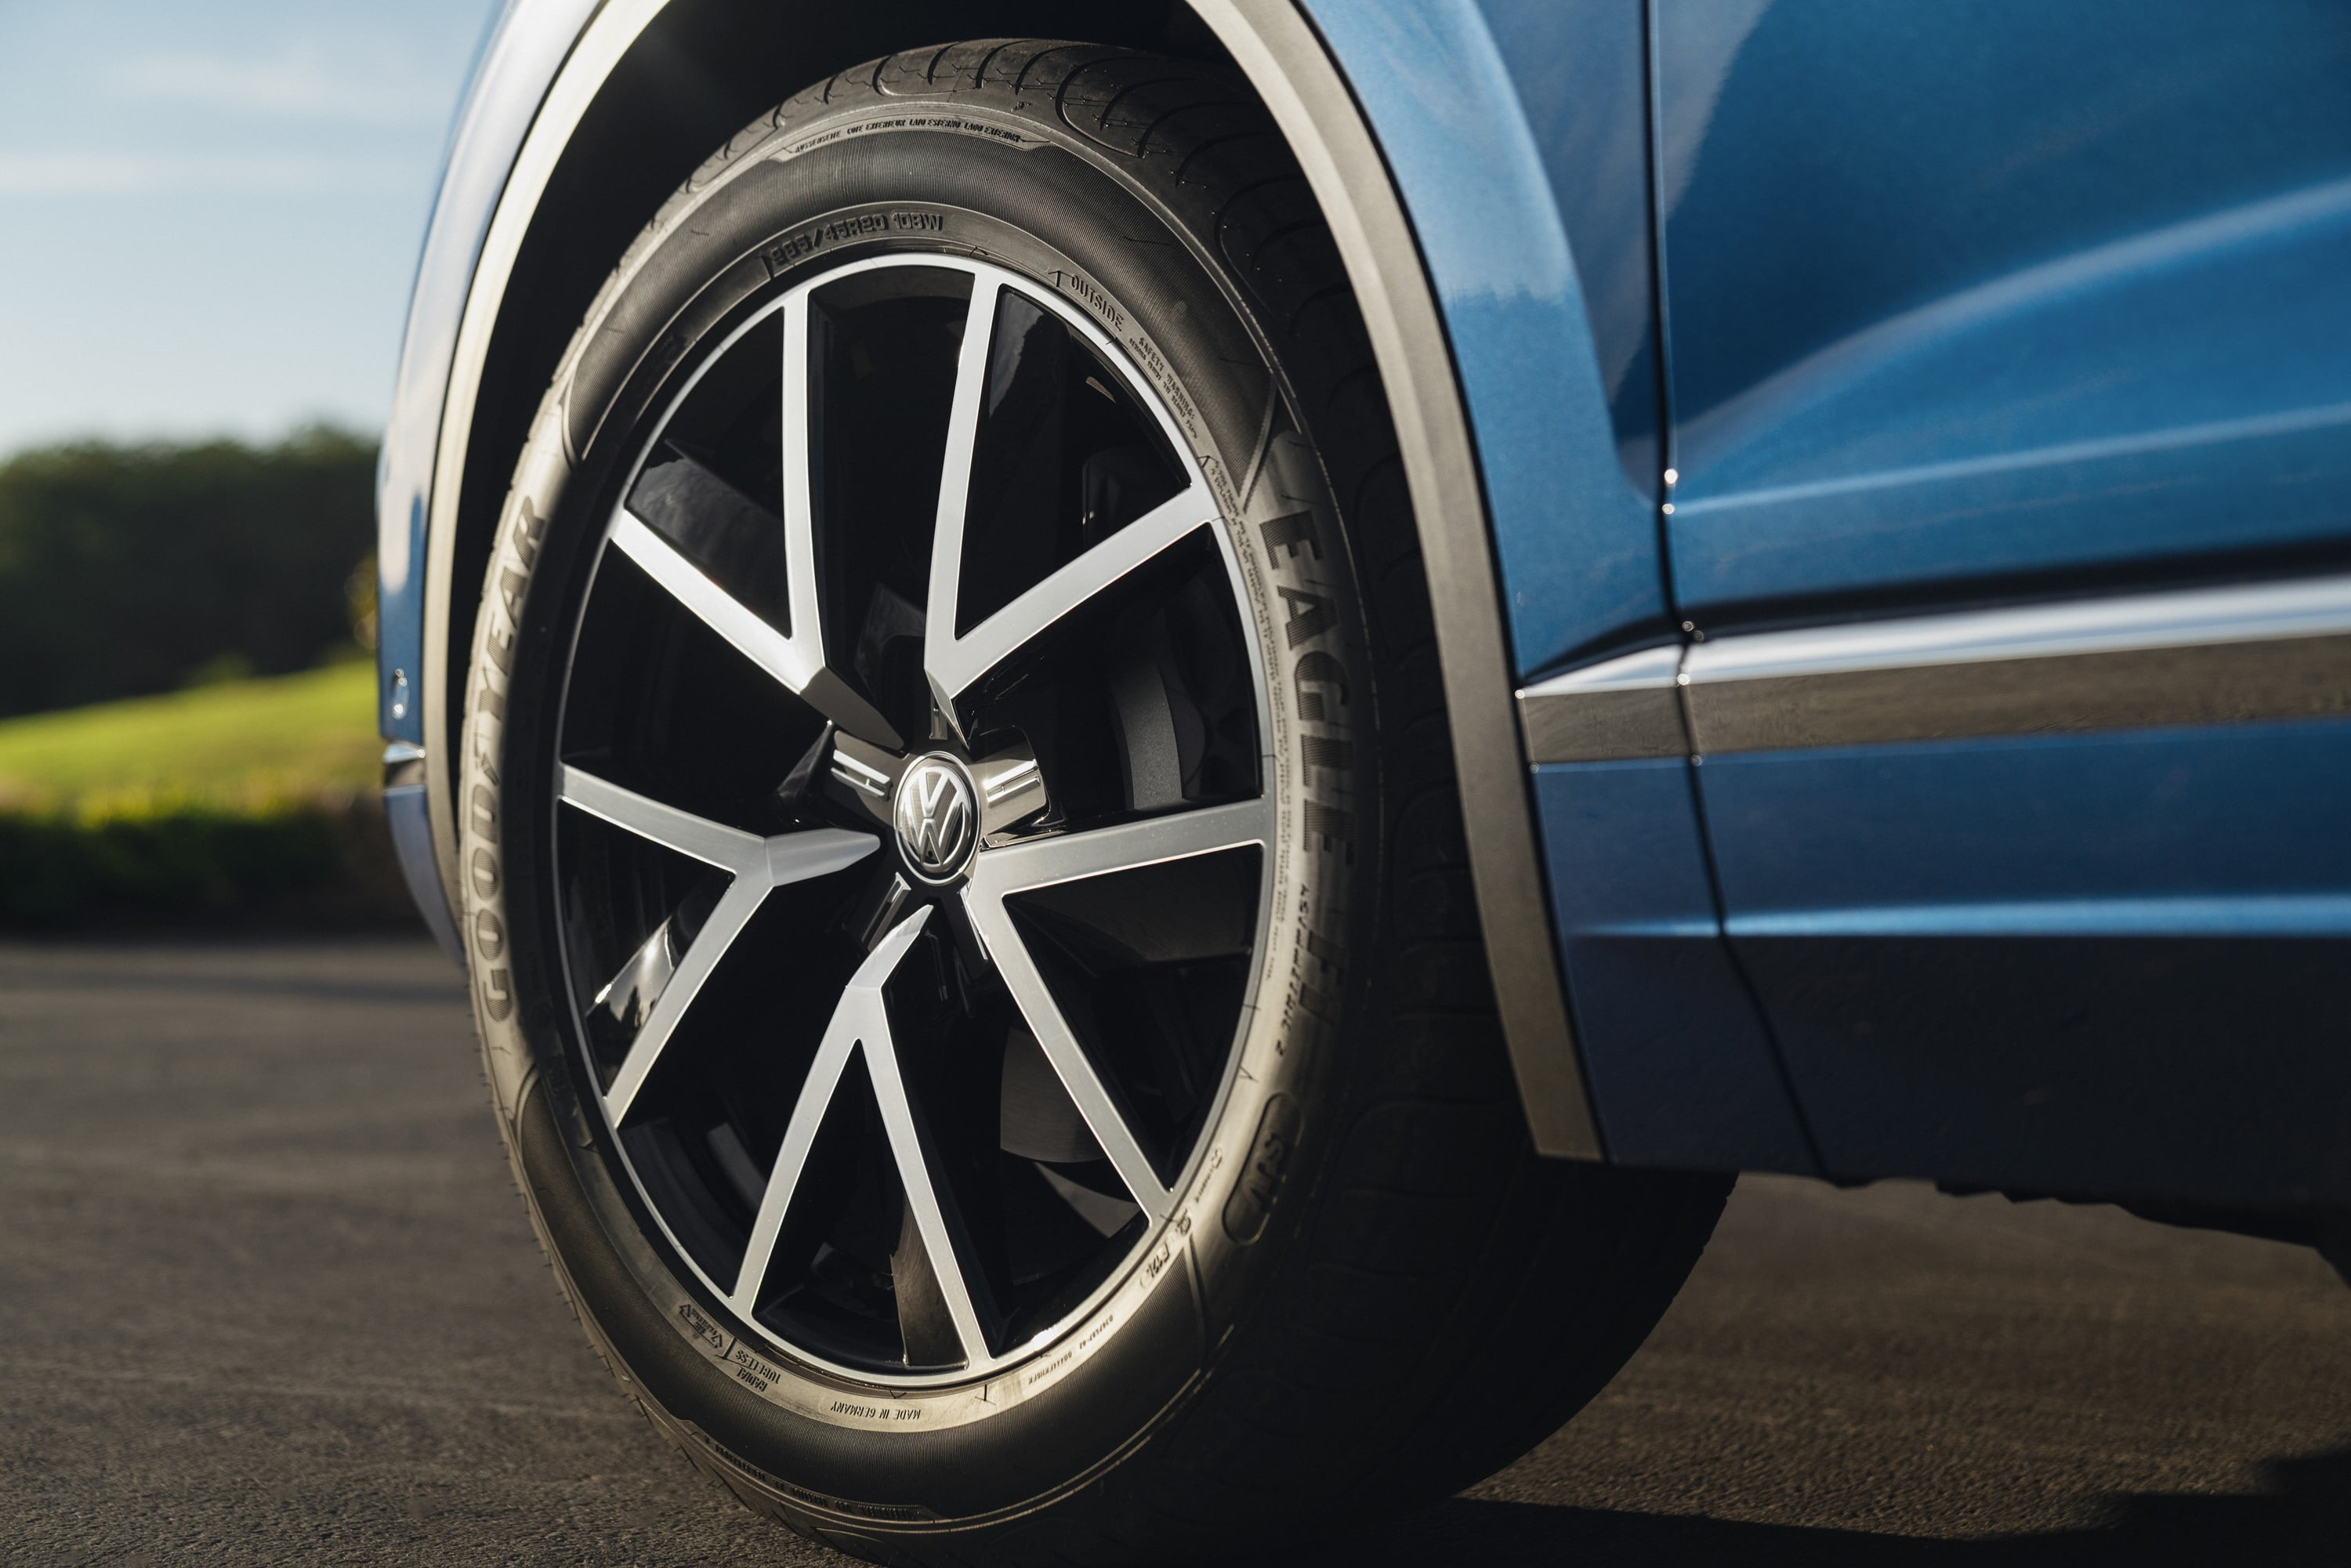 2019 VW Touareg Launch Edition 8 drive modes